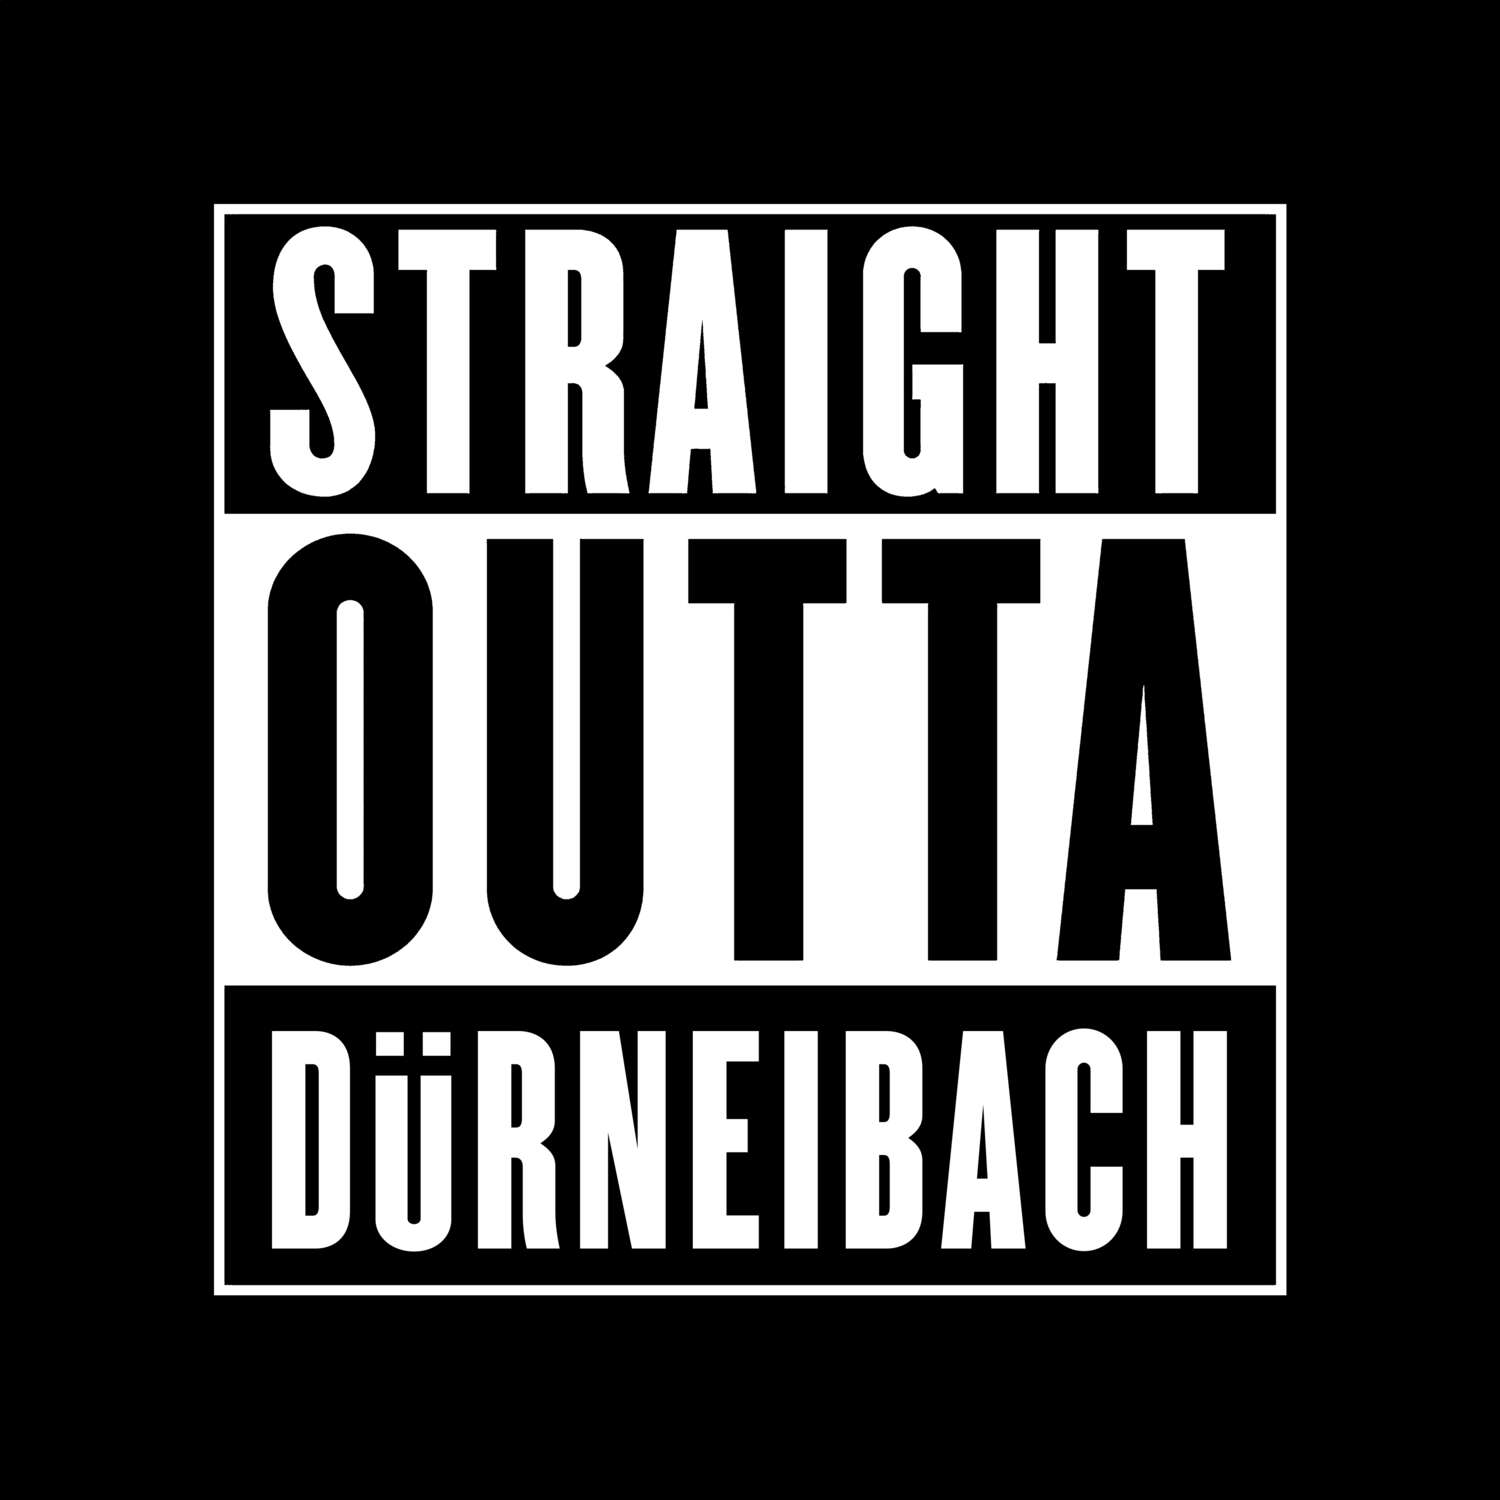 Dürneibach T-Shirt »Straight Outta«